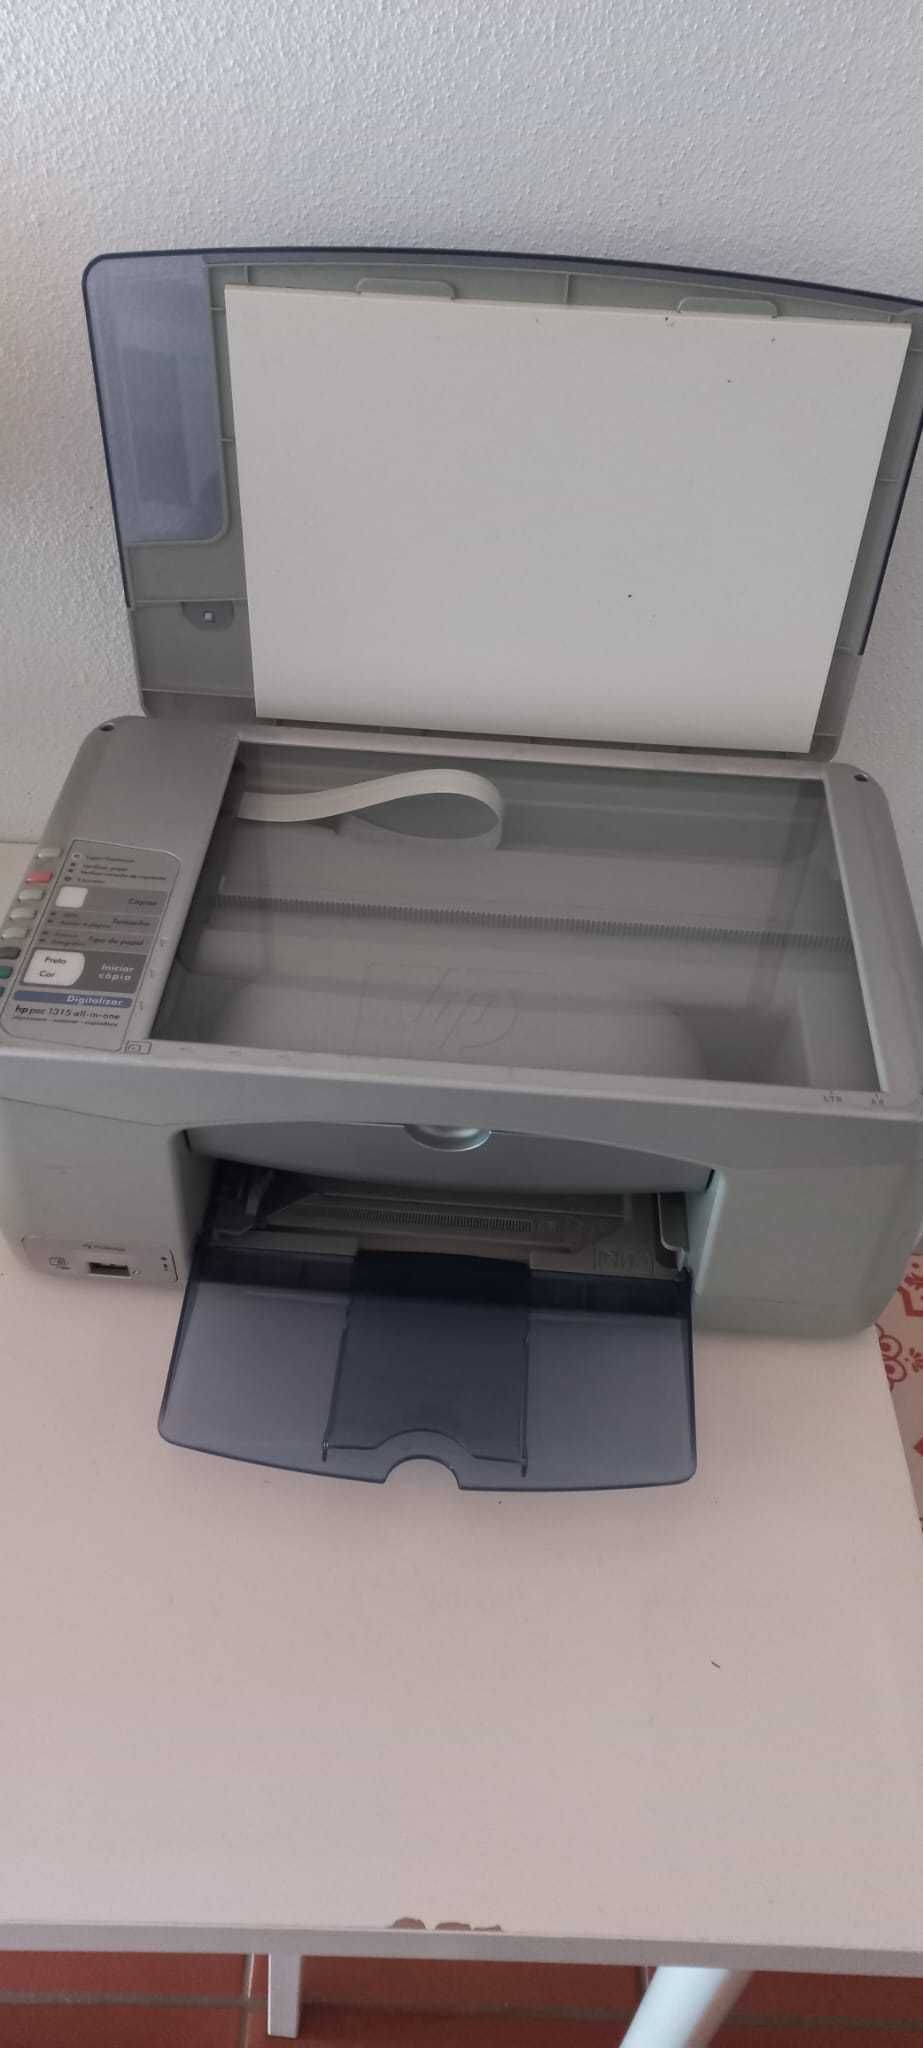 HP PSC 1315 all-in-one: Impressora, Scanner, Copiadora